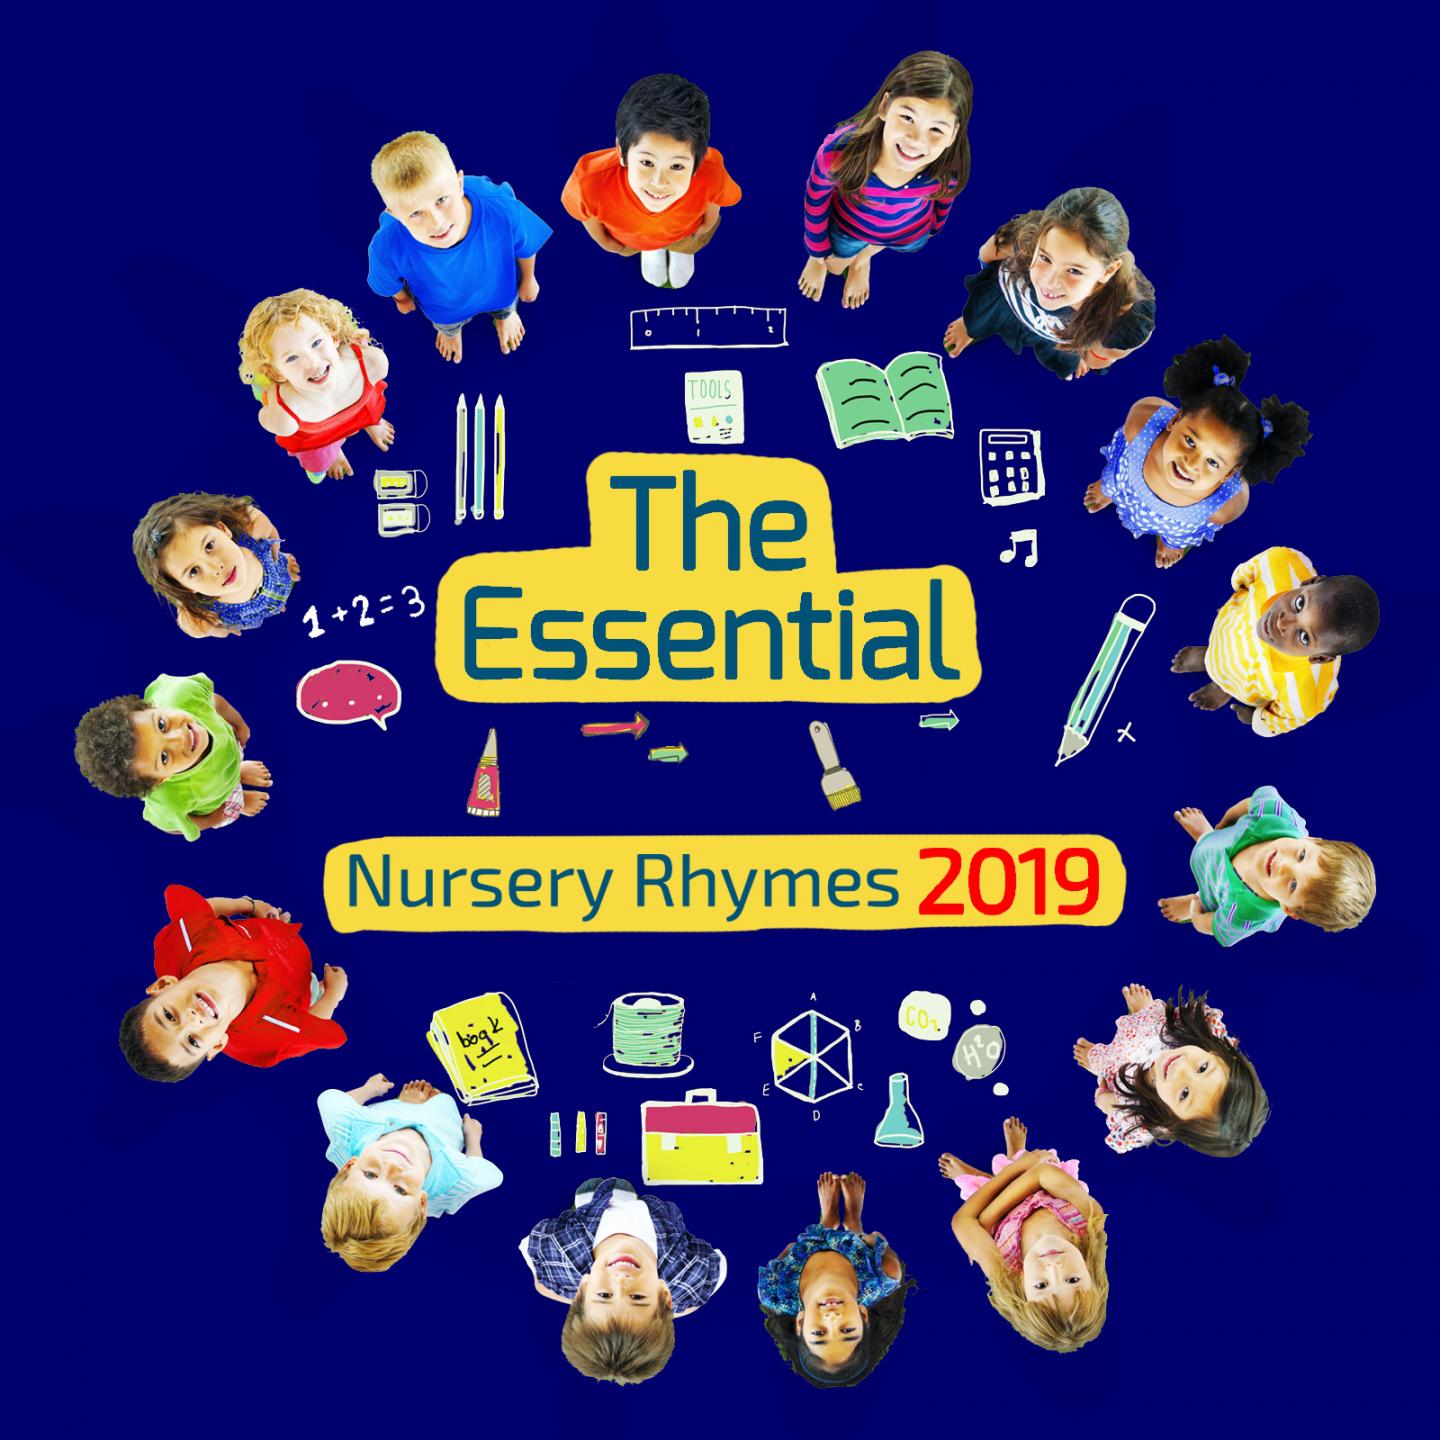 The Essential Nursery Rhymes 2019